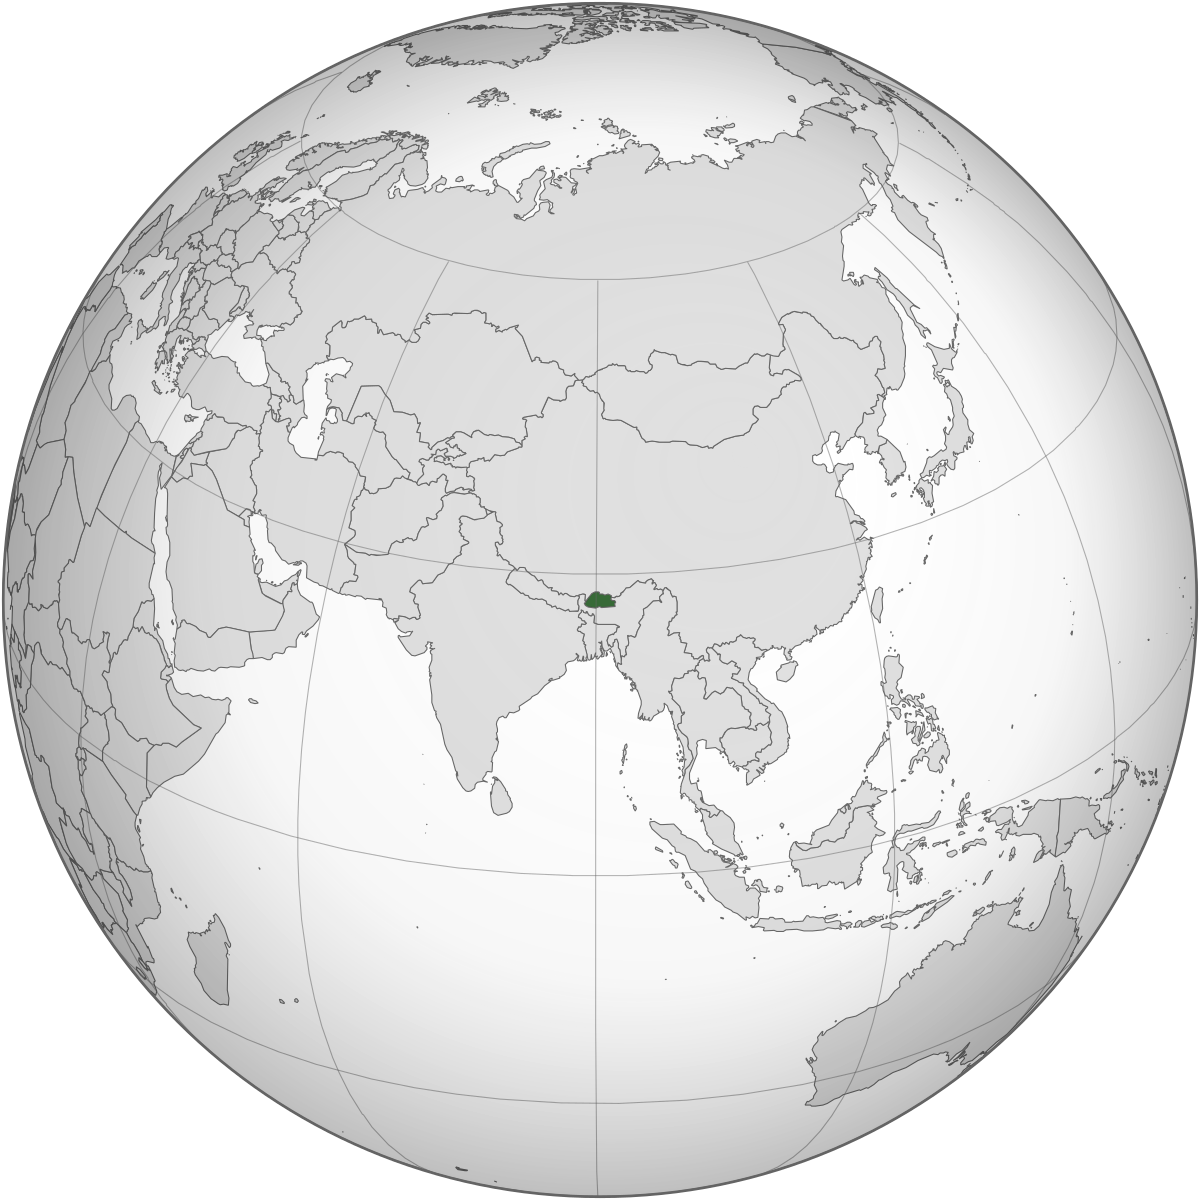 LGBT rights in Bhutan - Wikipedia